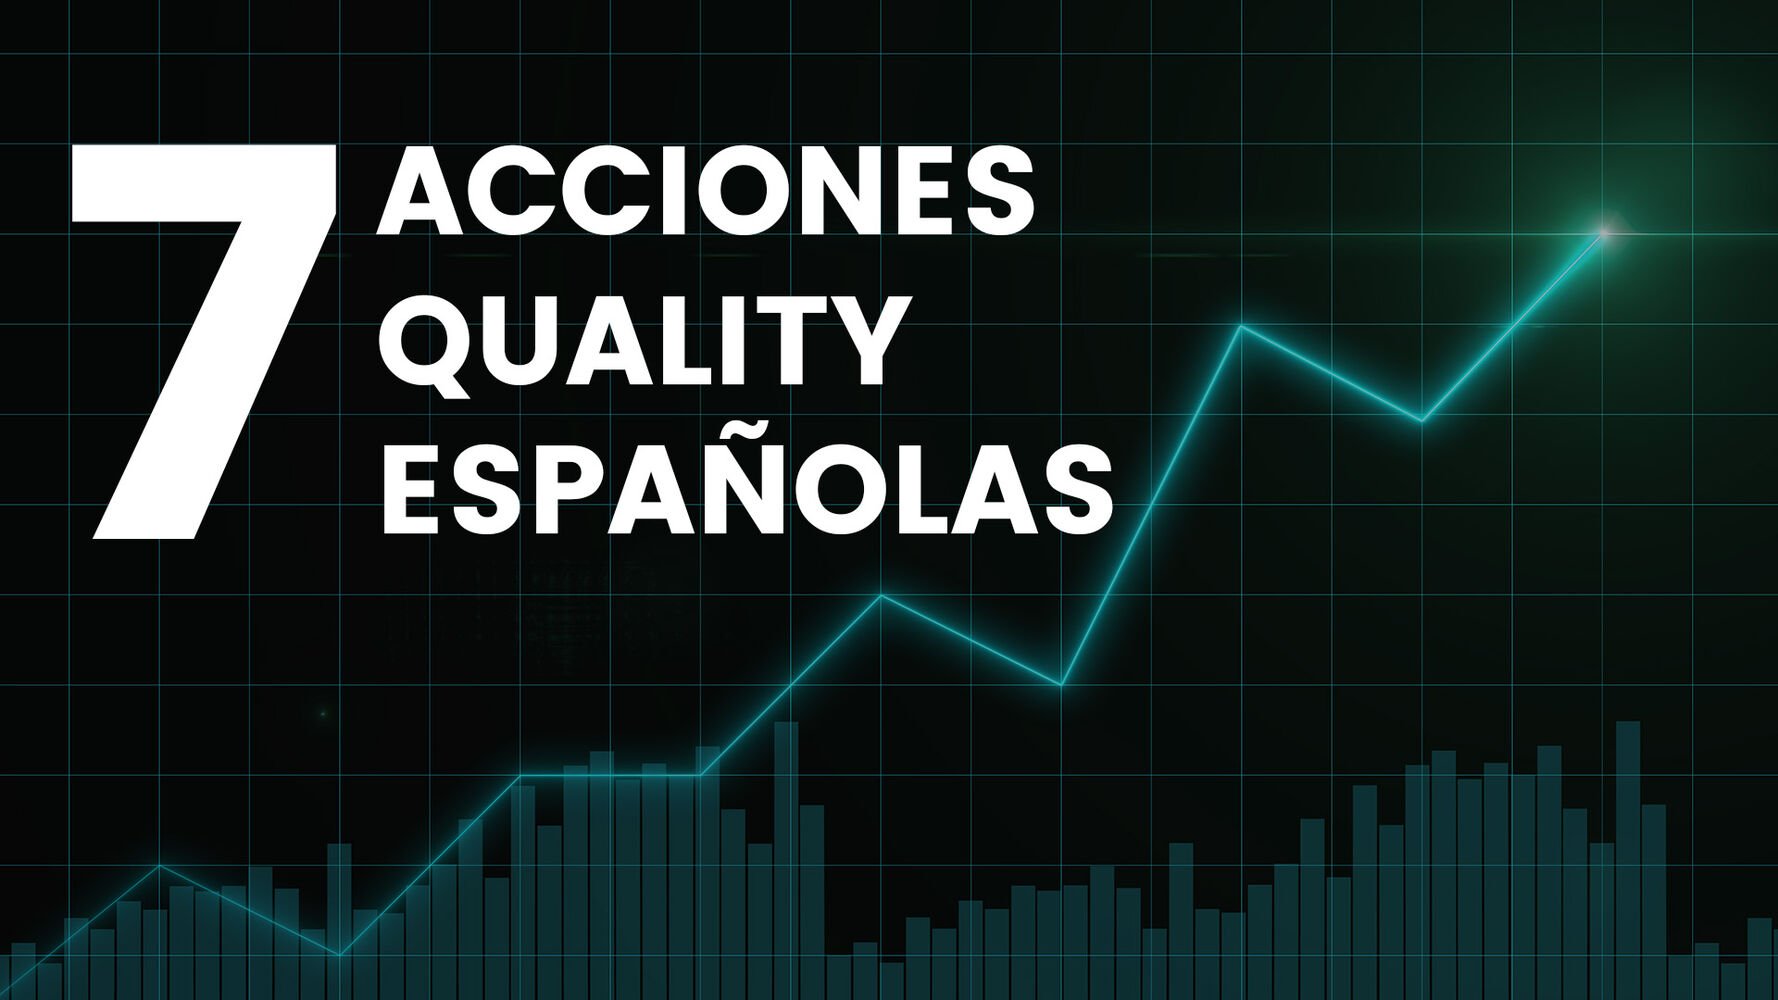 7 acciones Quality españolas